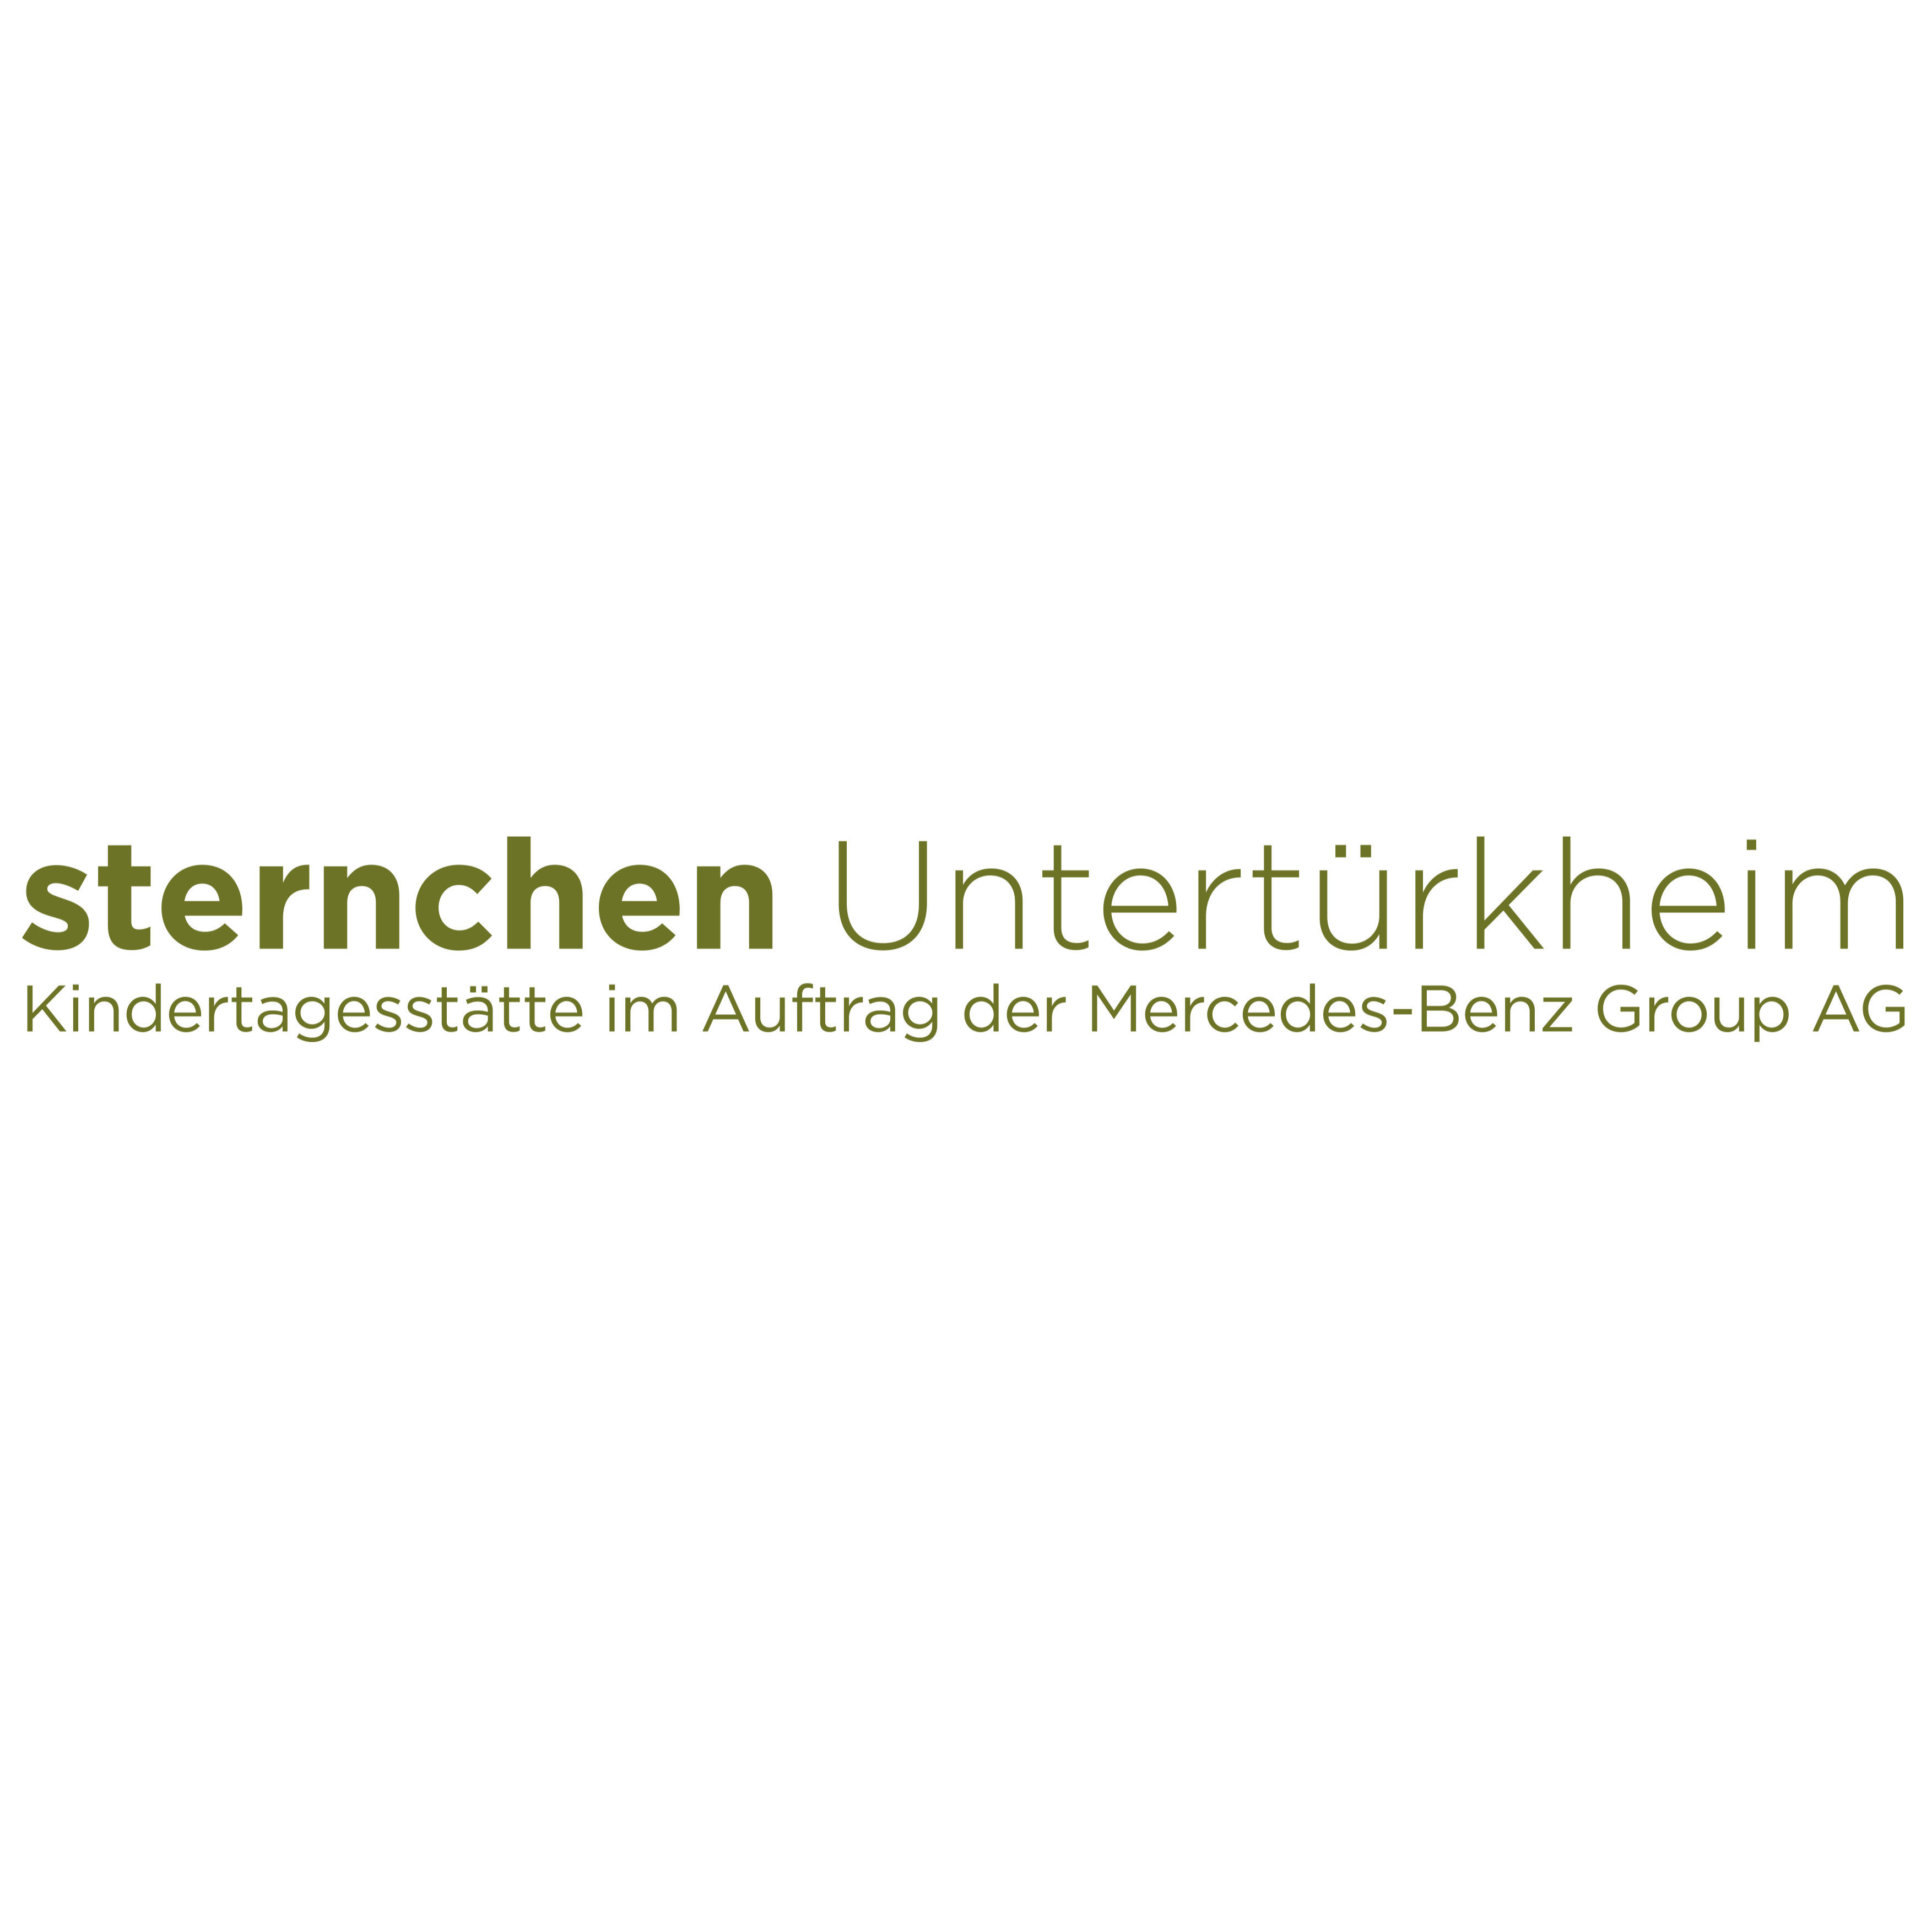 sternchen Untertürkheim - pme Familienservice - Kindergarten - Stuttgart - 0711 2206280 Germany | ShowMeLocal.com